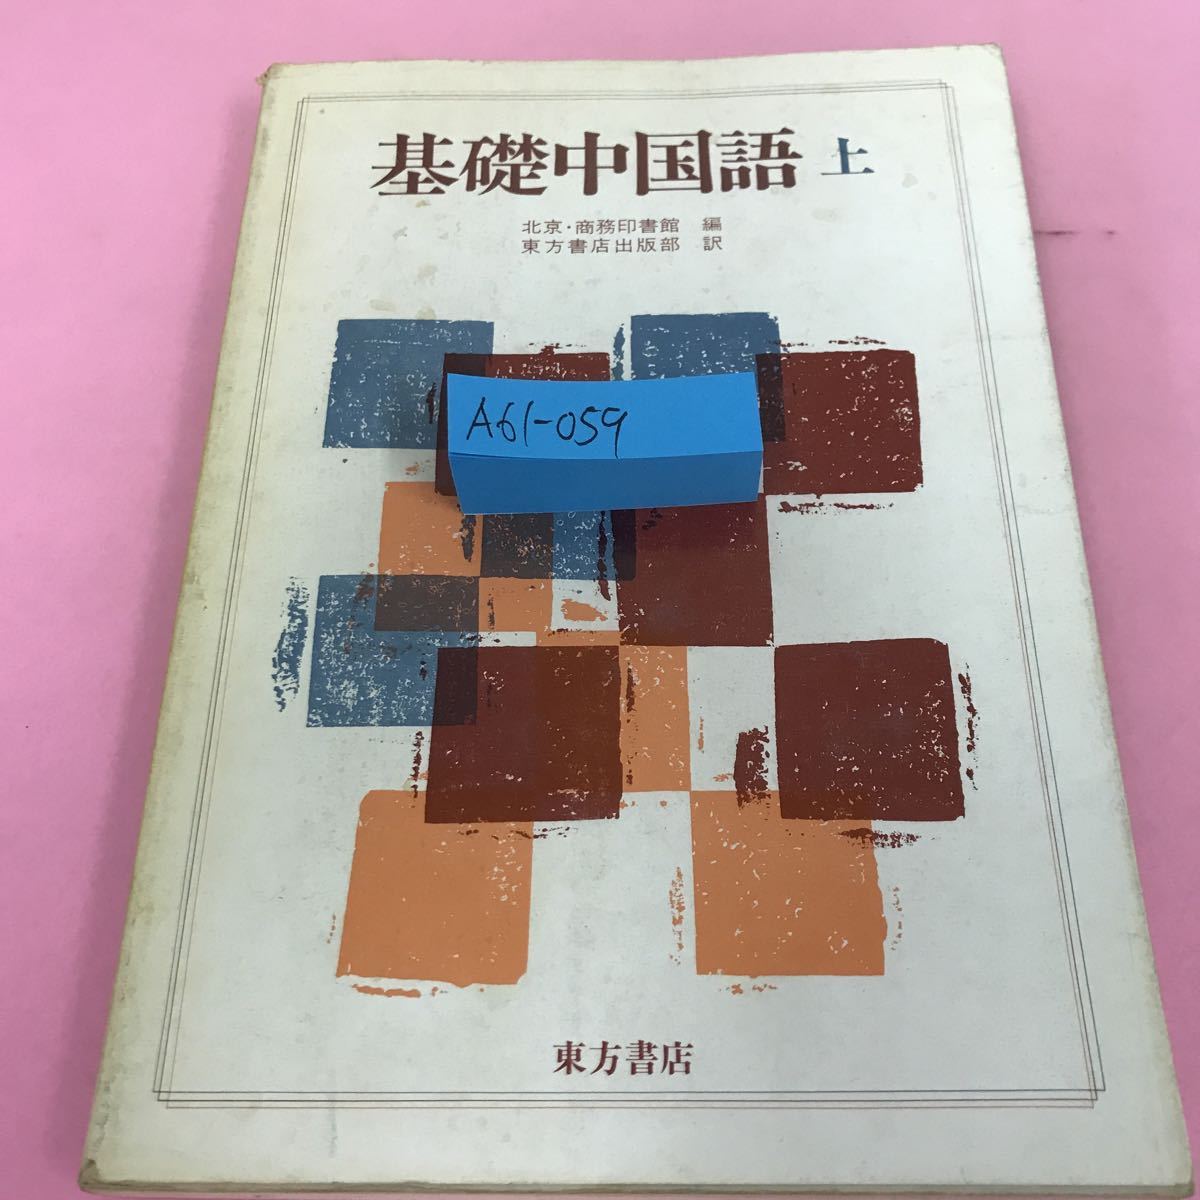 A61-059 Foundation Китайский Камикё / Коммерческая библиотека тюленей 5 марта 1982 г. Первое издание 16-я печать в книжном магазине